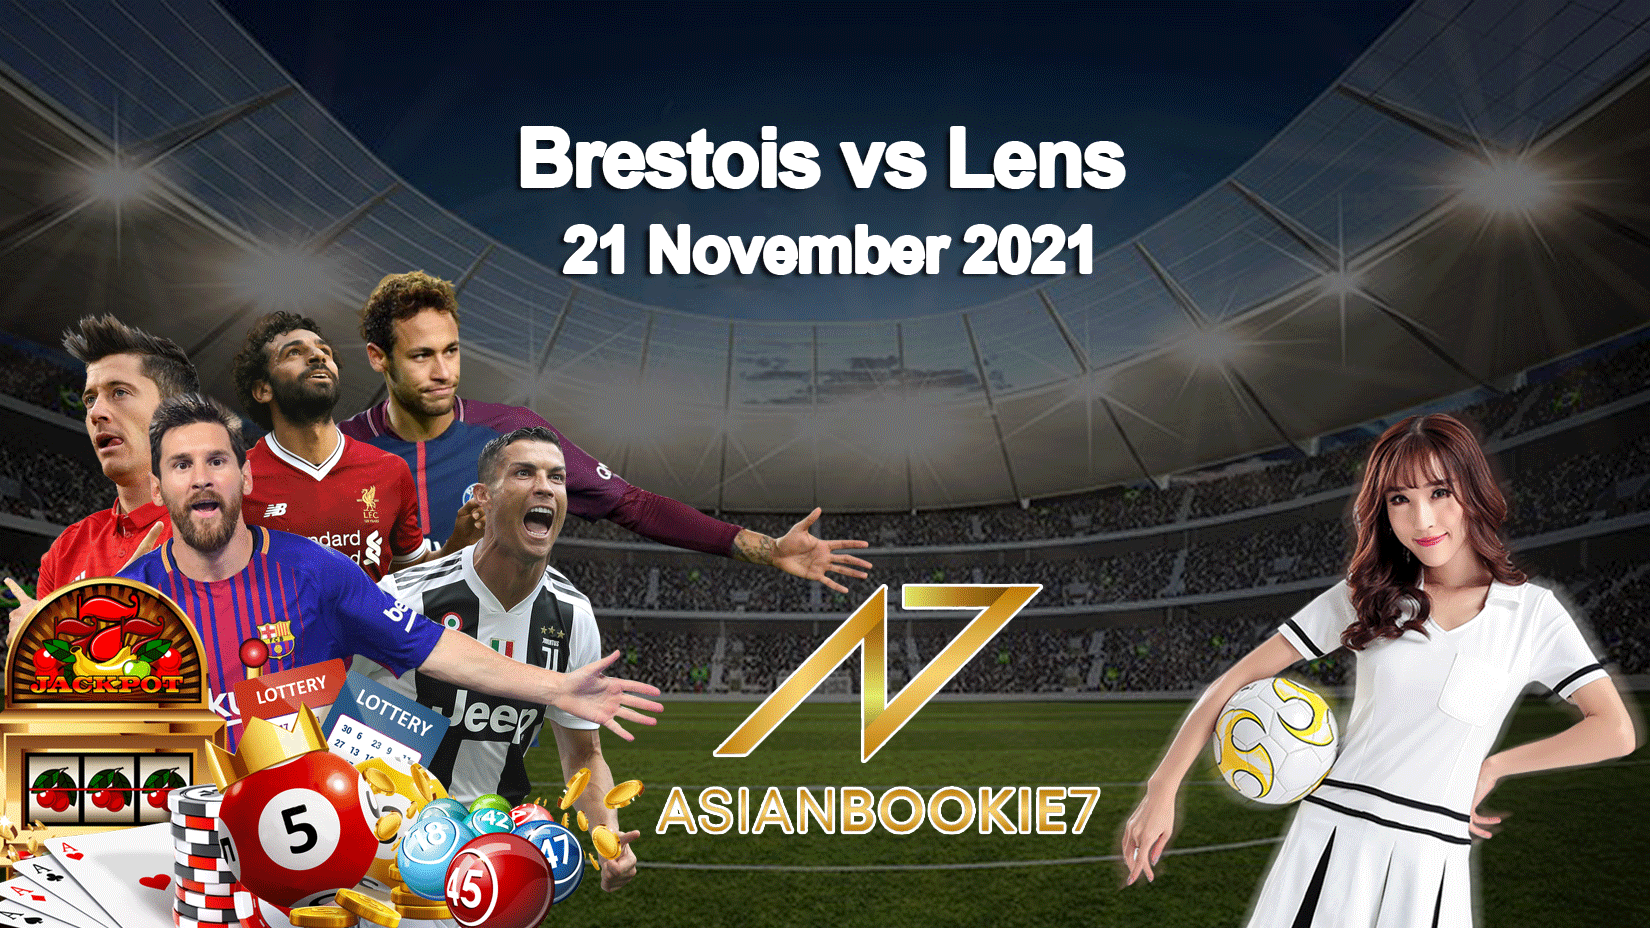 Prediksi Brestois vs Lens 21 November 2021